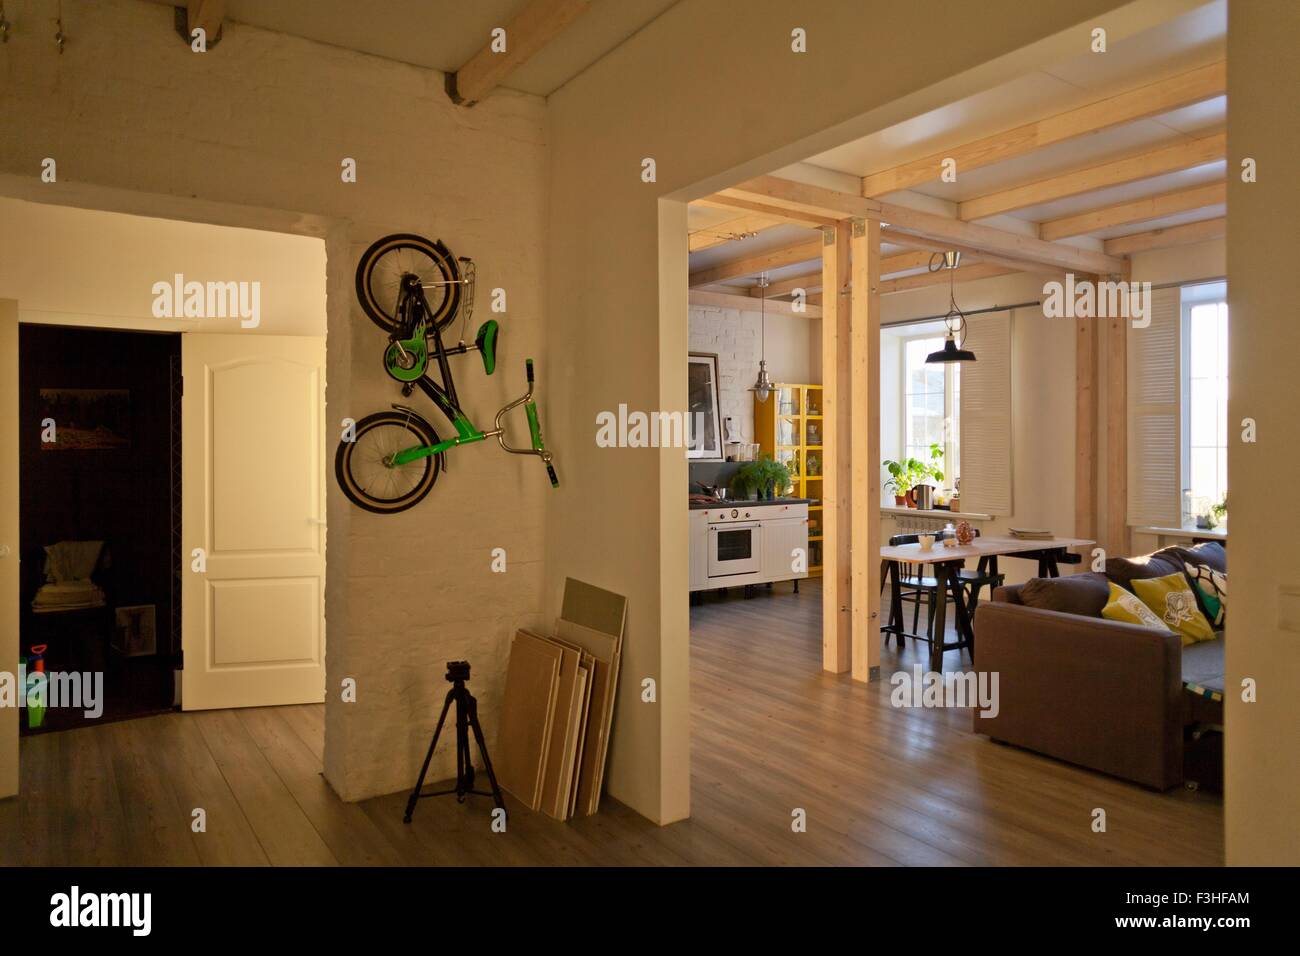 Ansicht der Abstellraum, Küche, Essecke, Couch und Fahrrad an Wand Stockfoto